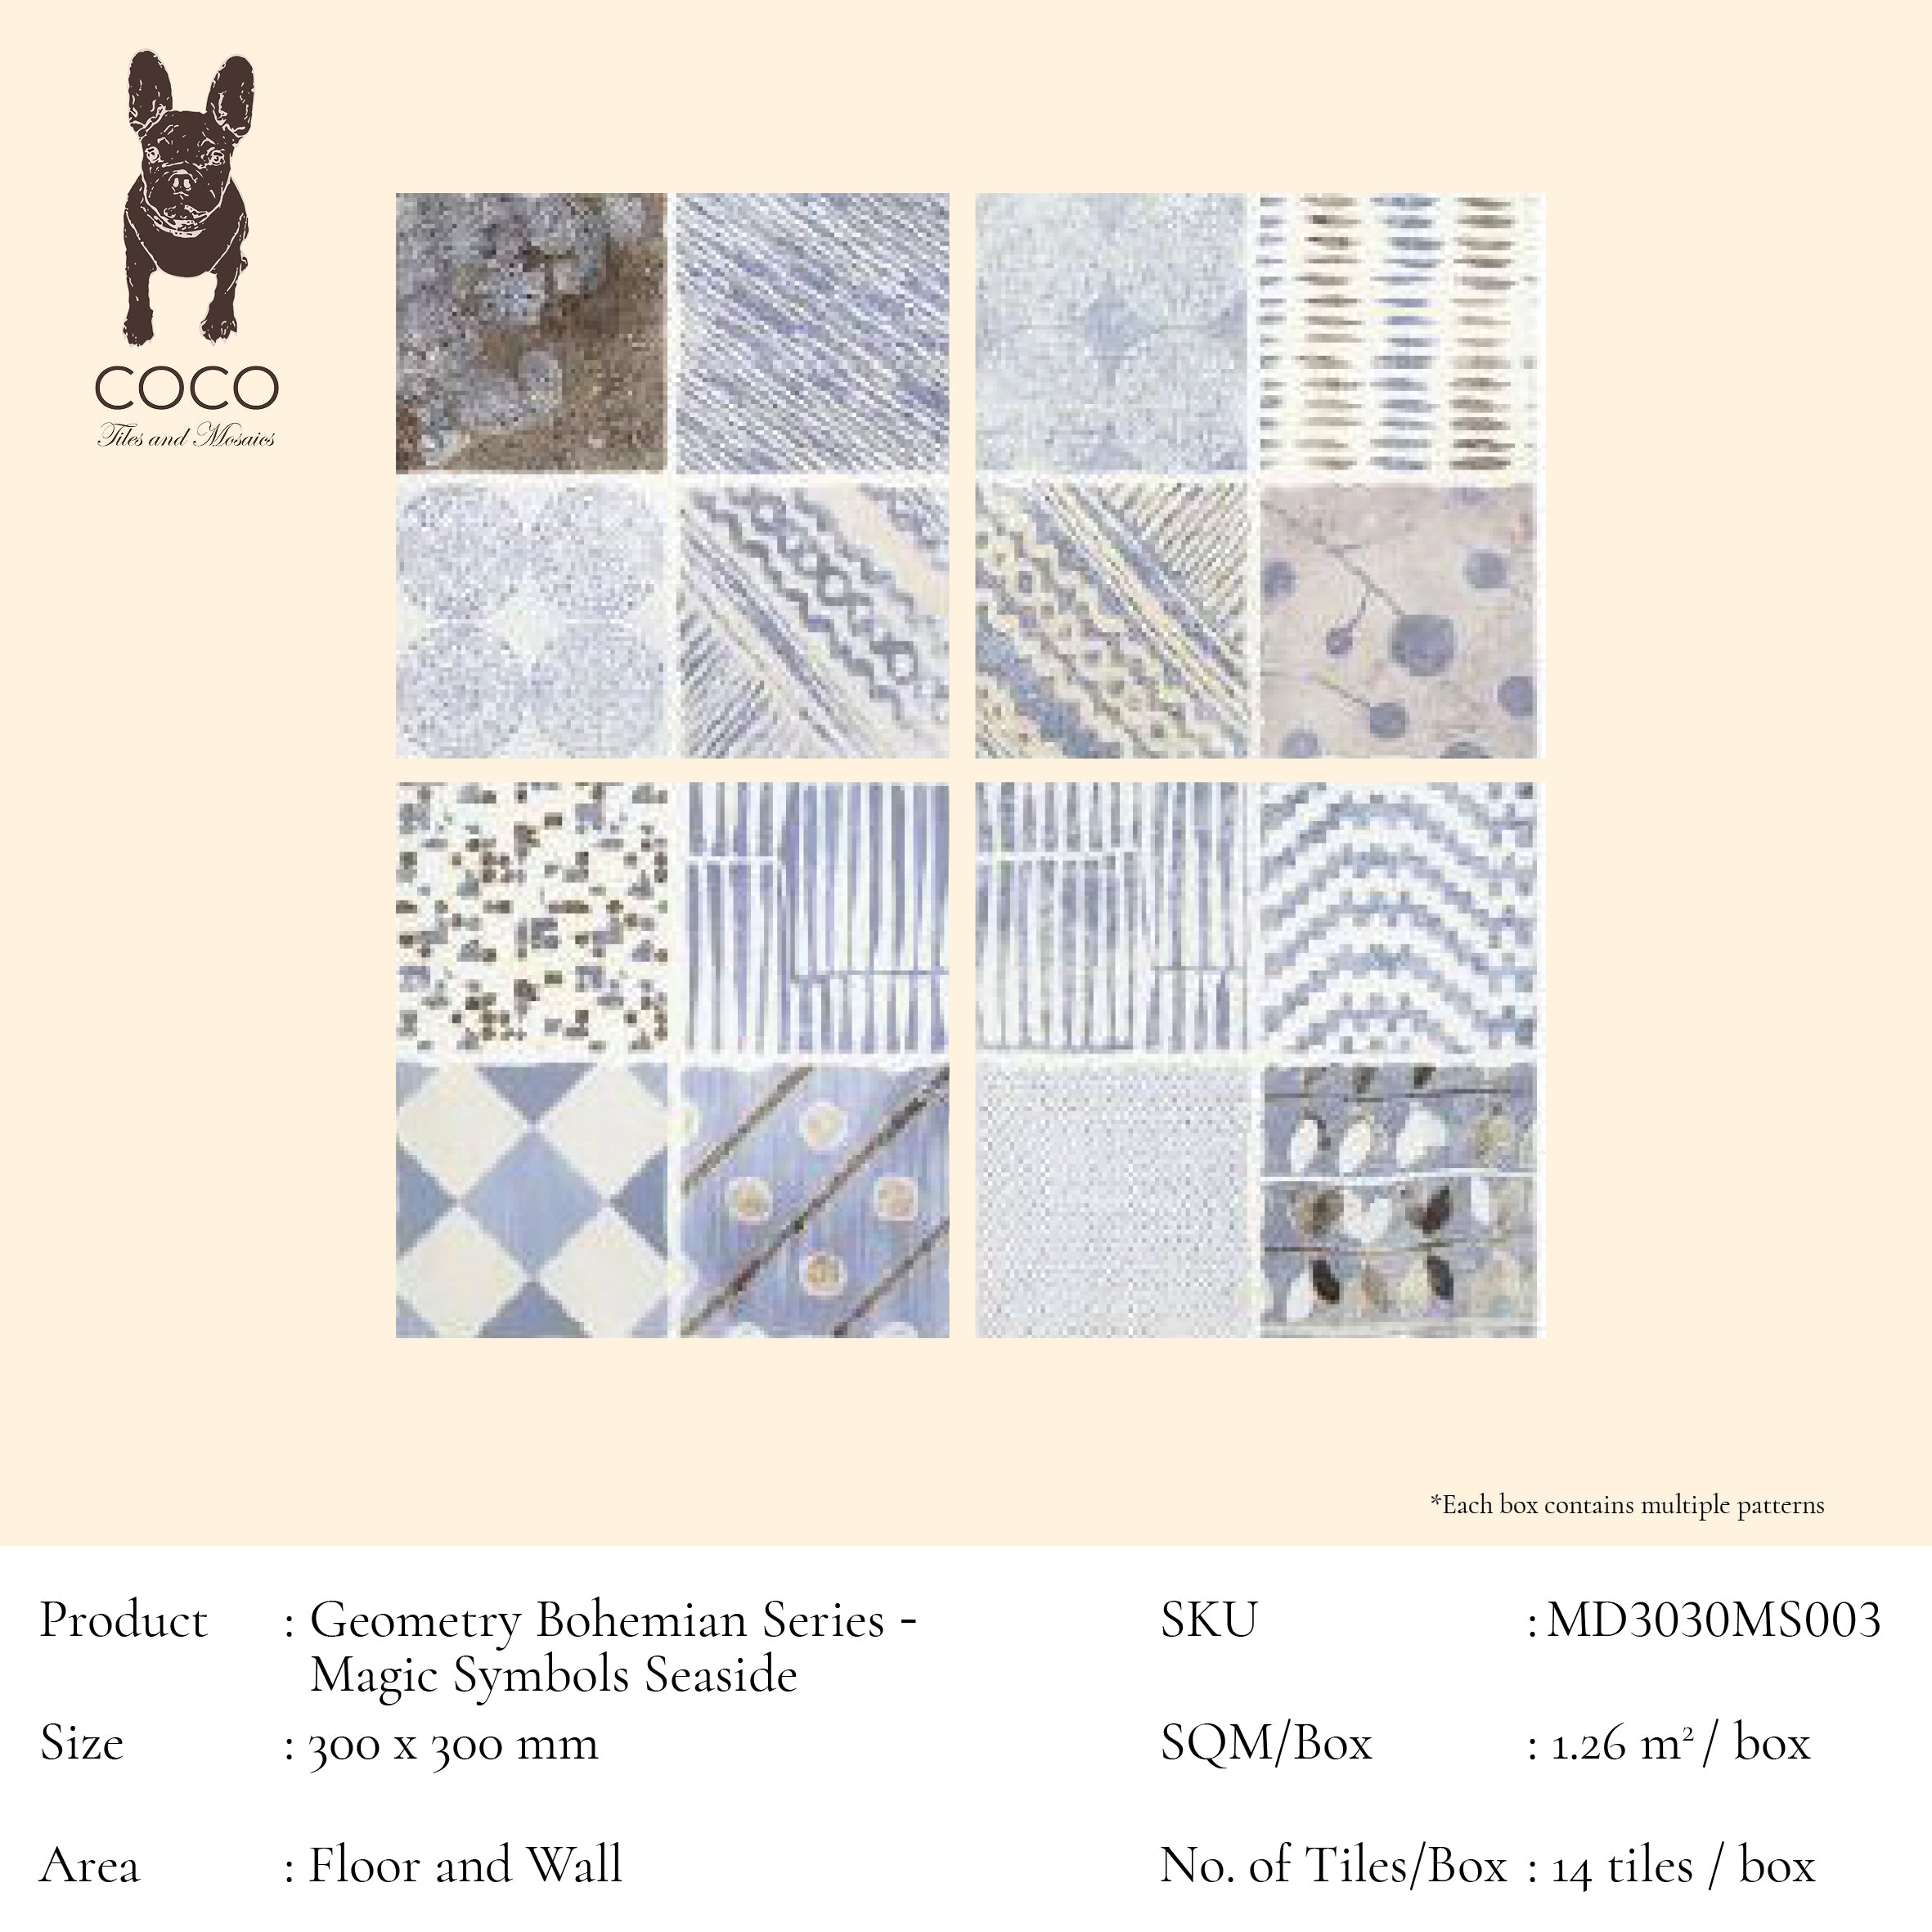 Geometry Bohemian Series - Magic Symbols Seaside 300x300mm Ceramic Tile